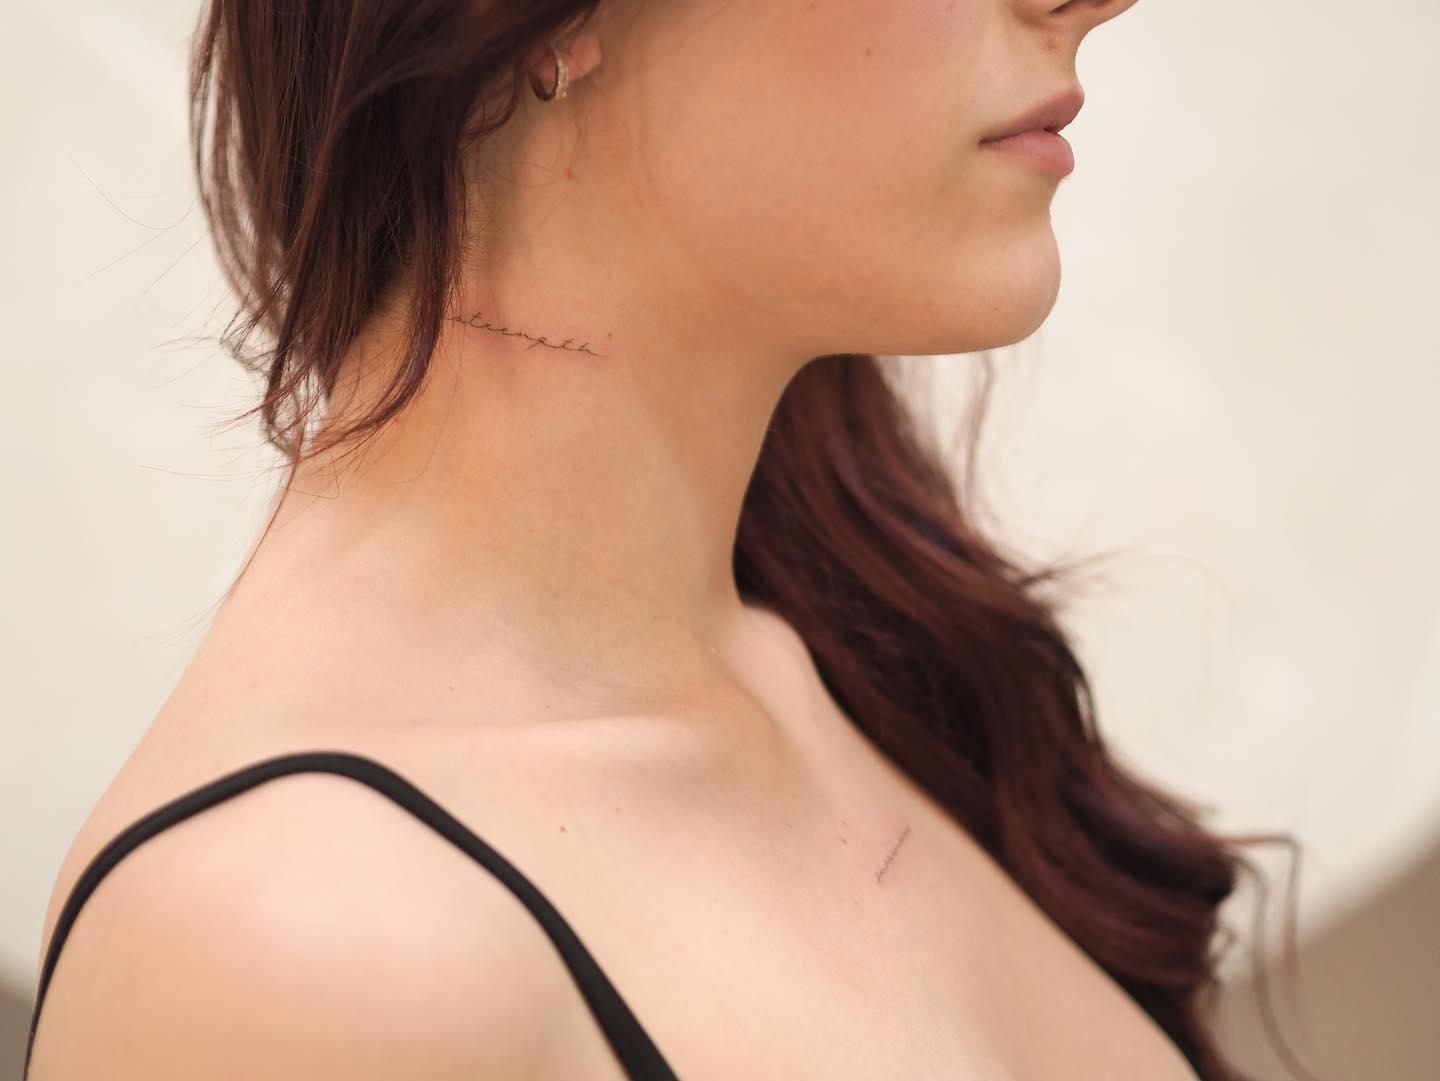 La palabra 'strenght' tatuada en el cuello